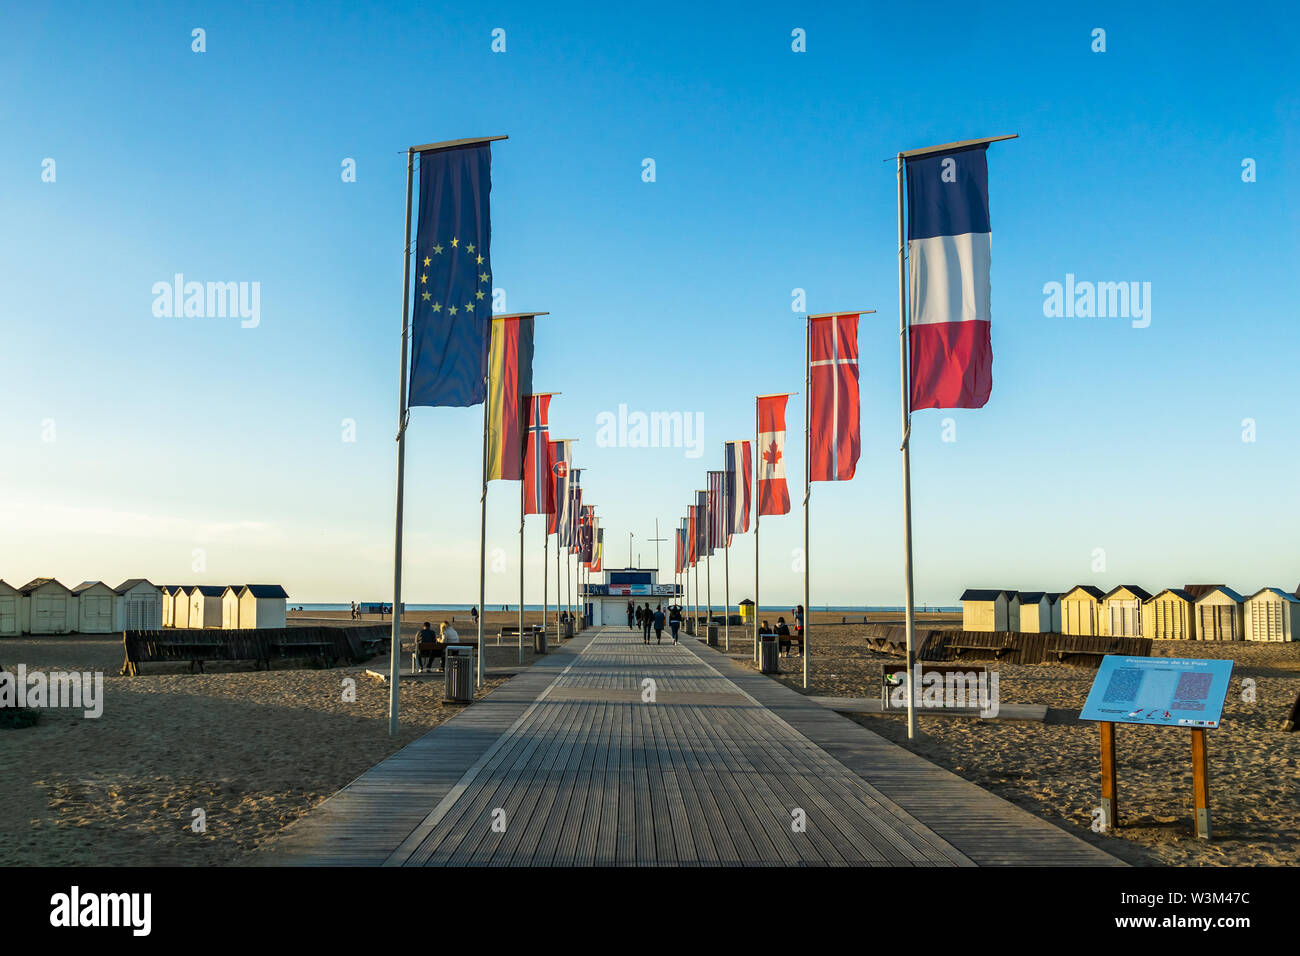 Promenade de la paix avec les drapeaux flottant à Riva Bella Beach, Ouistreham, Normandie, France. Banque D'Images